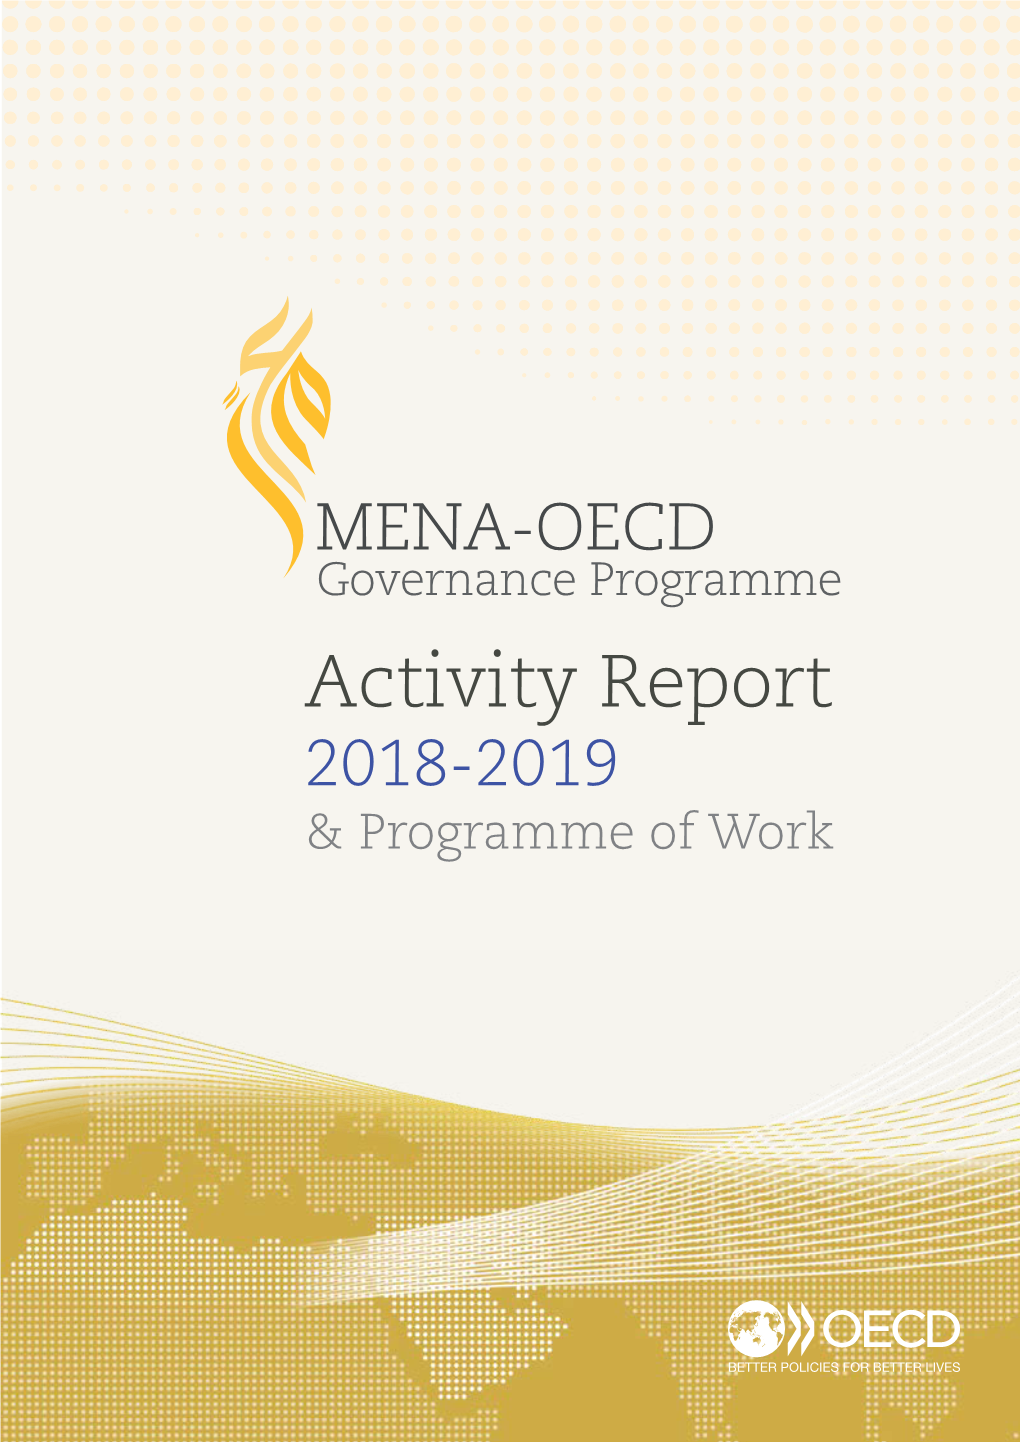 MENA-OECD Activity Report